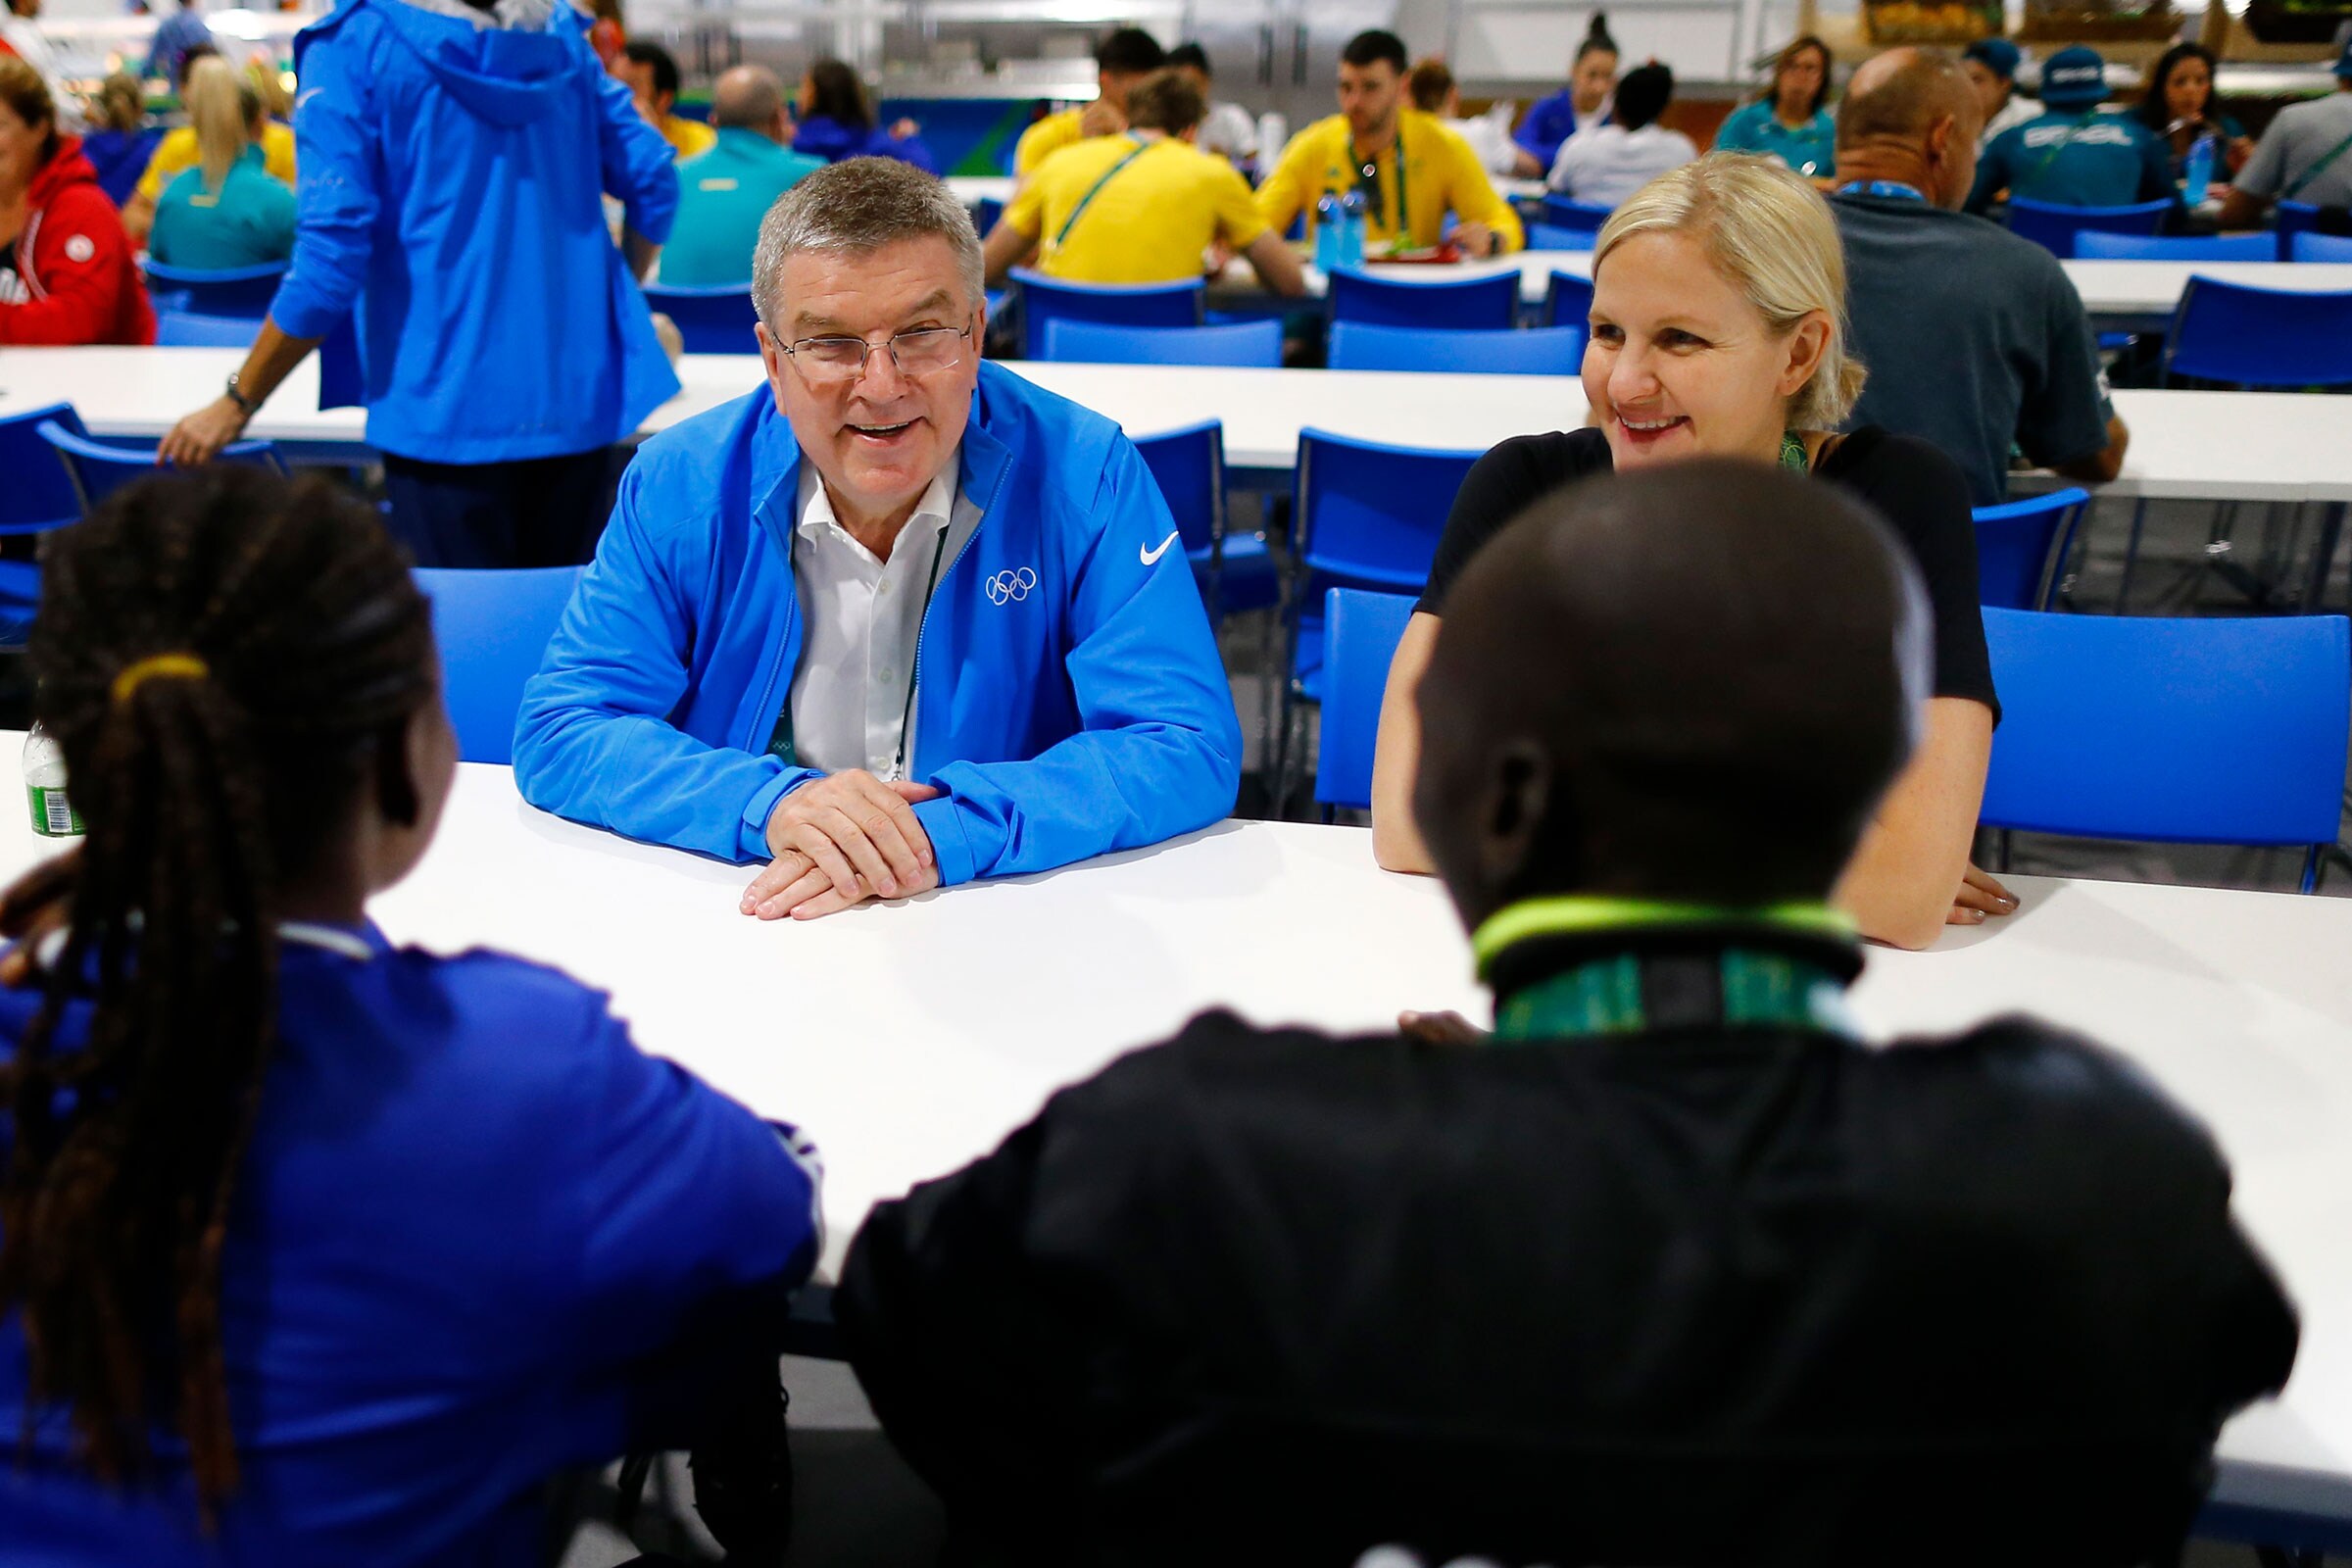 Le président du CIO Thomas Bach, le membre du CIO Kirsty Coventry rencontrent des athlètes dans le village olympique de Rio de Janeiro, au Brésil.